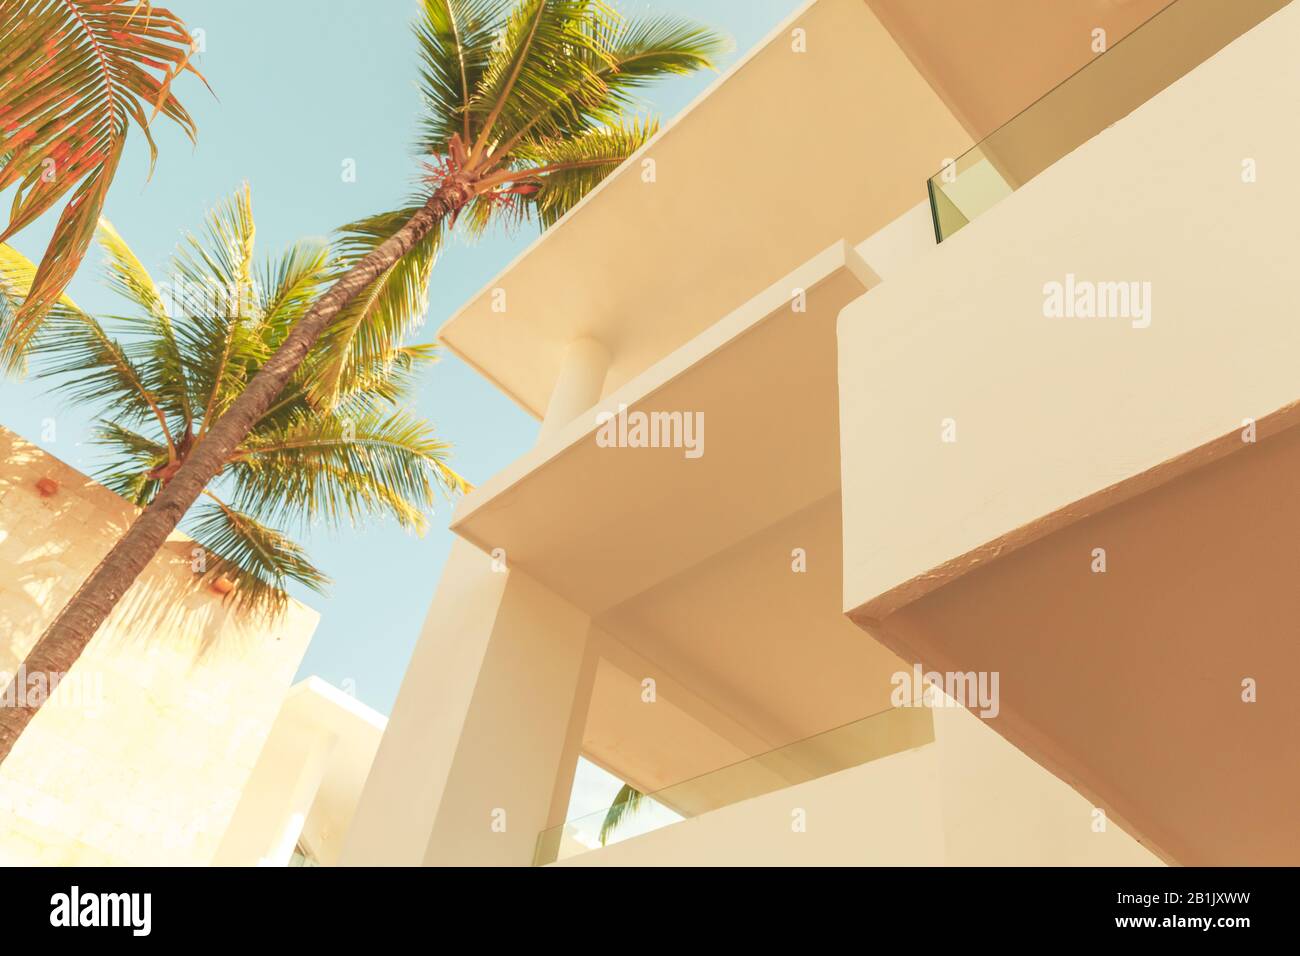 Abstrakter architektonischer Hintergrund mit weißer Außenfläche und Palmen unter blauem bewölktem Himmel, stilisiertes Foto mit Vintage-Farbkorrekturfilter Stockfoto